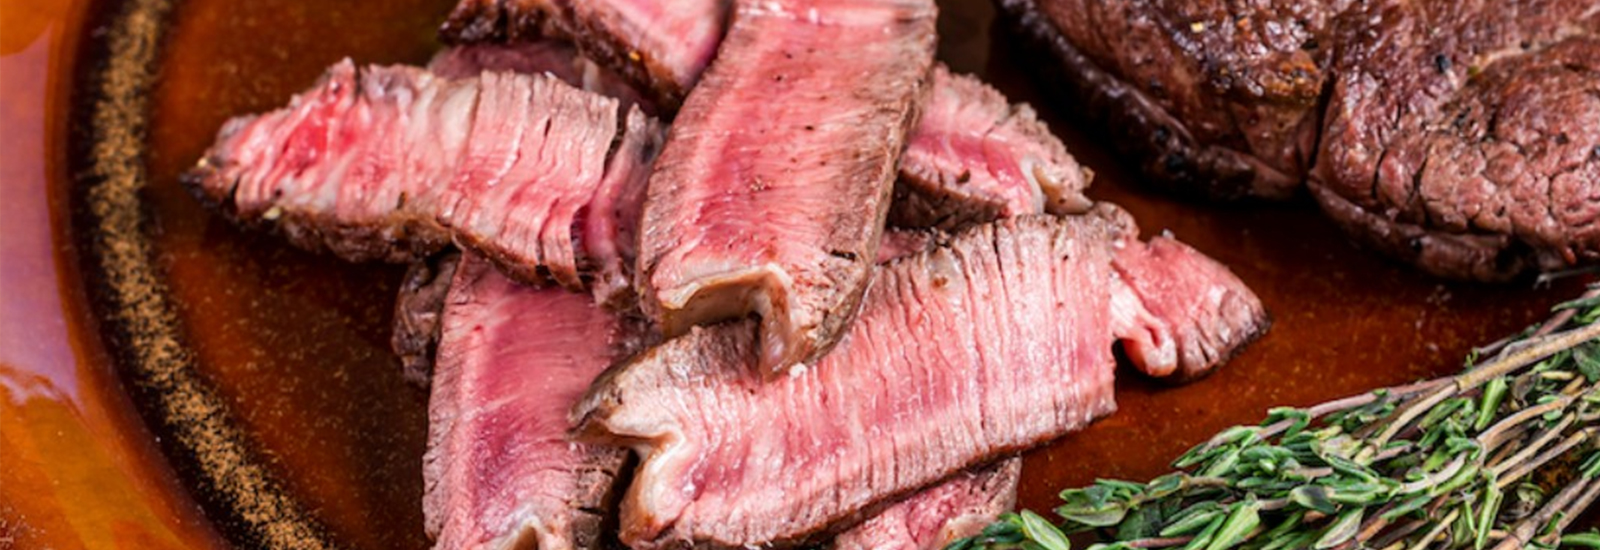 Puntos de la carne: cómo acertar en sus distintos grados de cocción